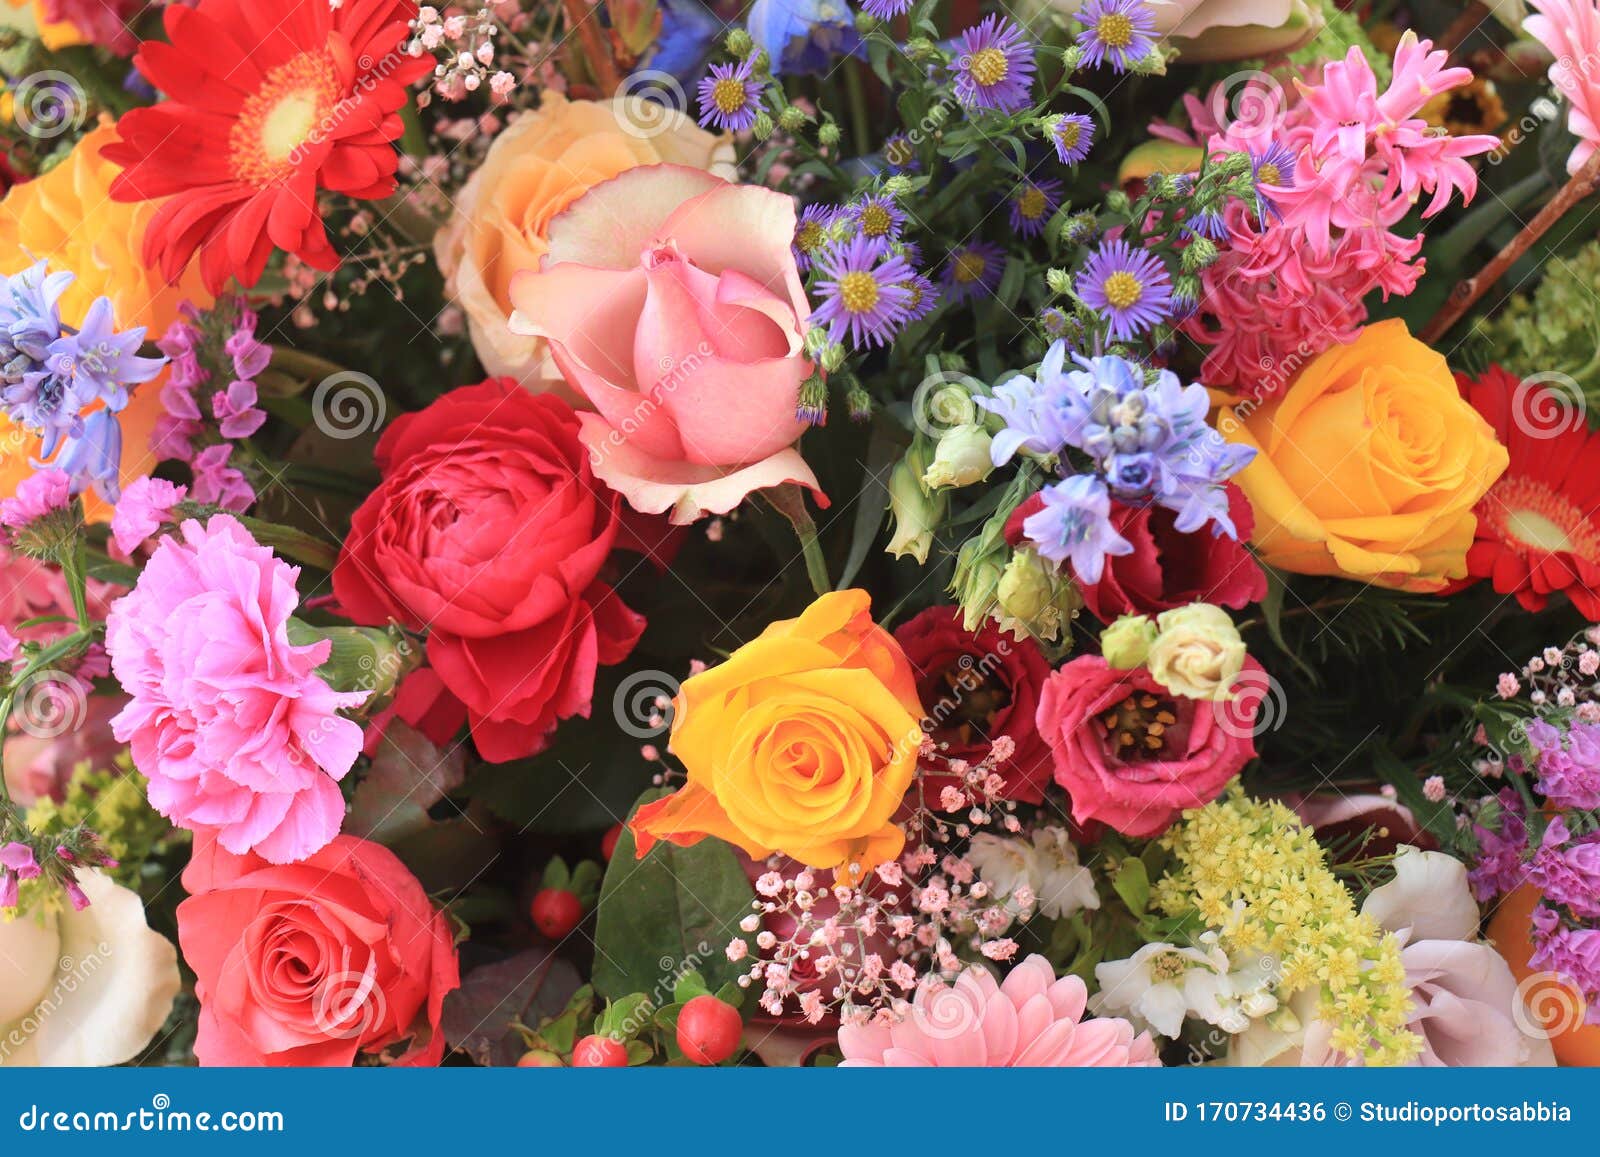 Flores de boda coloridas foto de archivo. Imagen de boda - 170734436